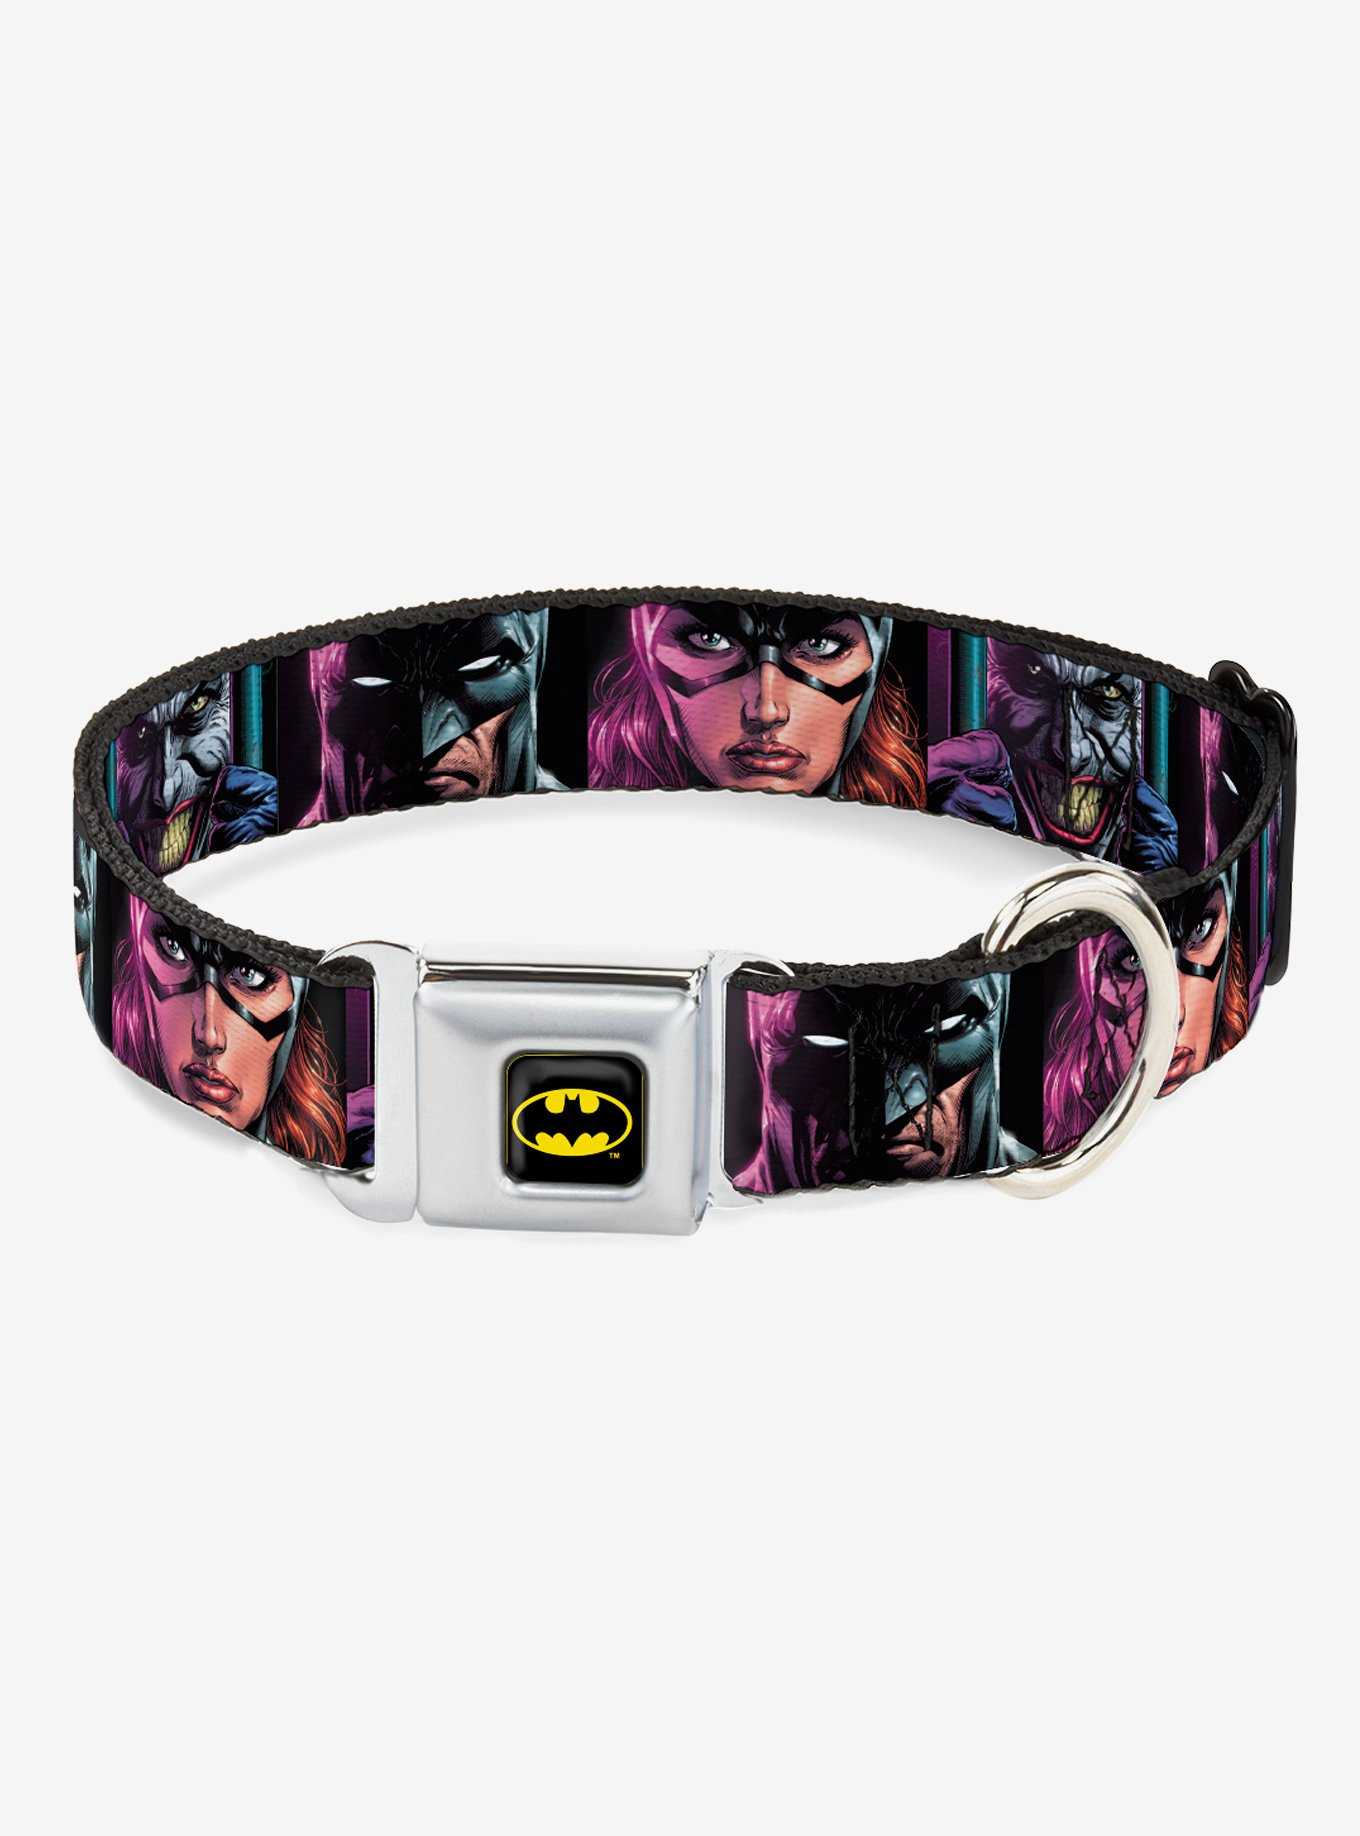 DC Comics Batman Batgirl Joker Comic Book Cover Seatbelt Buckle Dog Collar, , hi-res